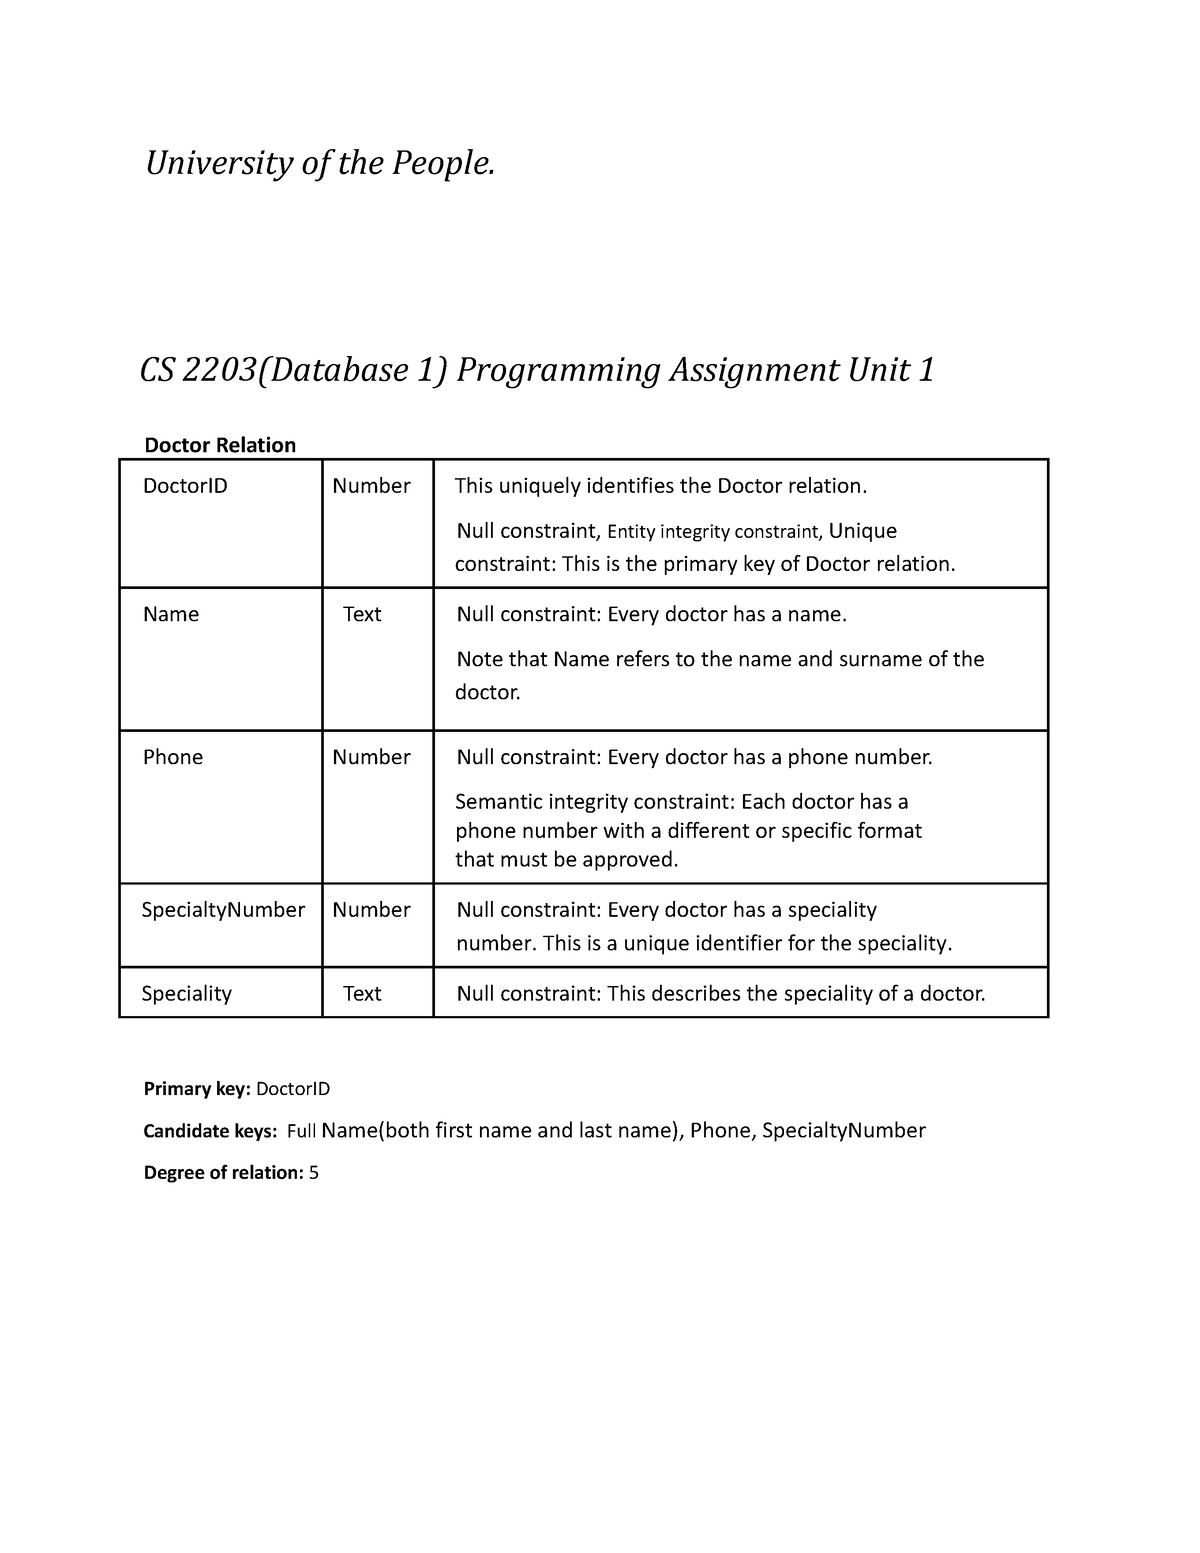 cs 2203 programming assignment unit 1